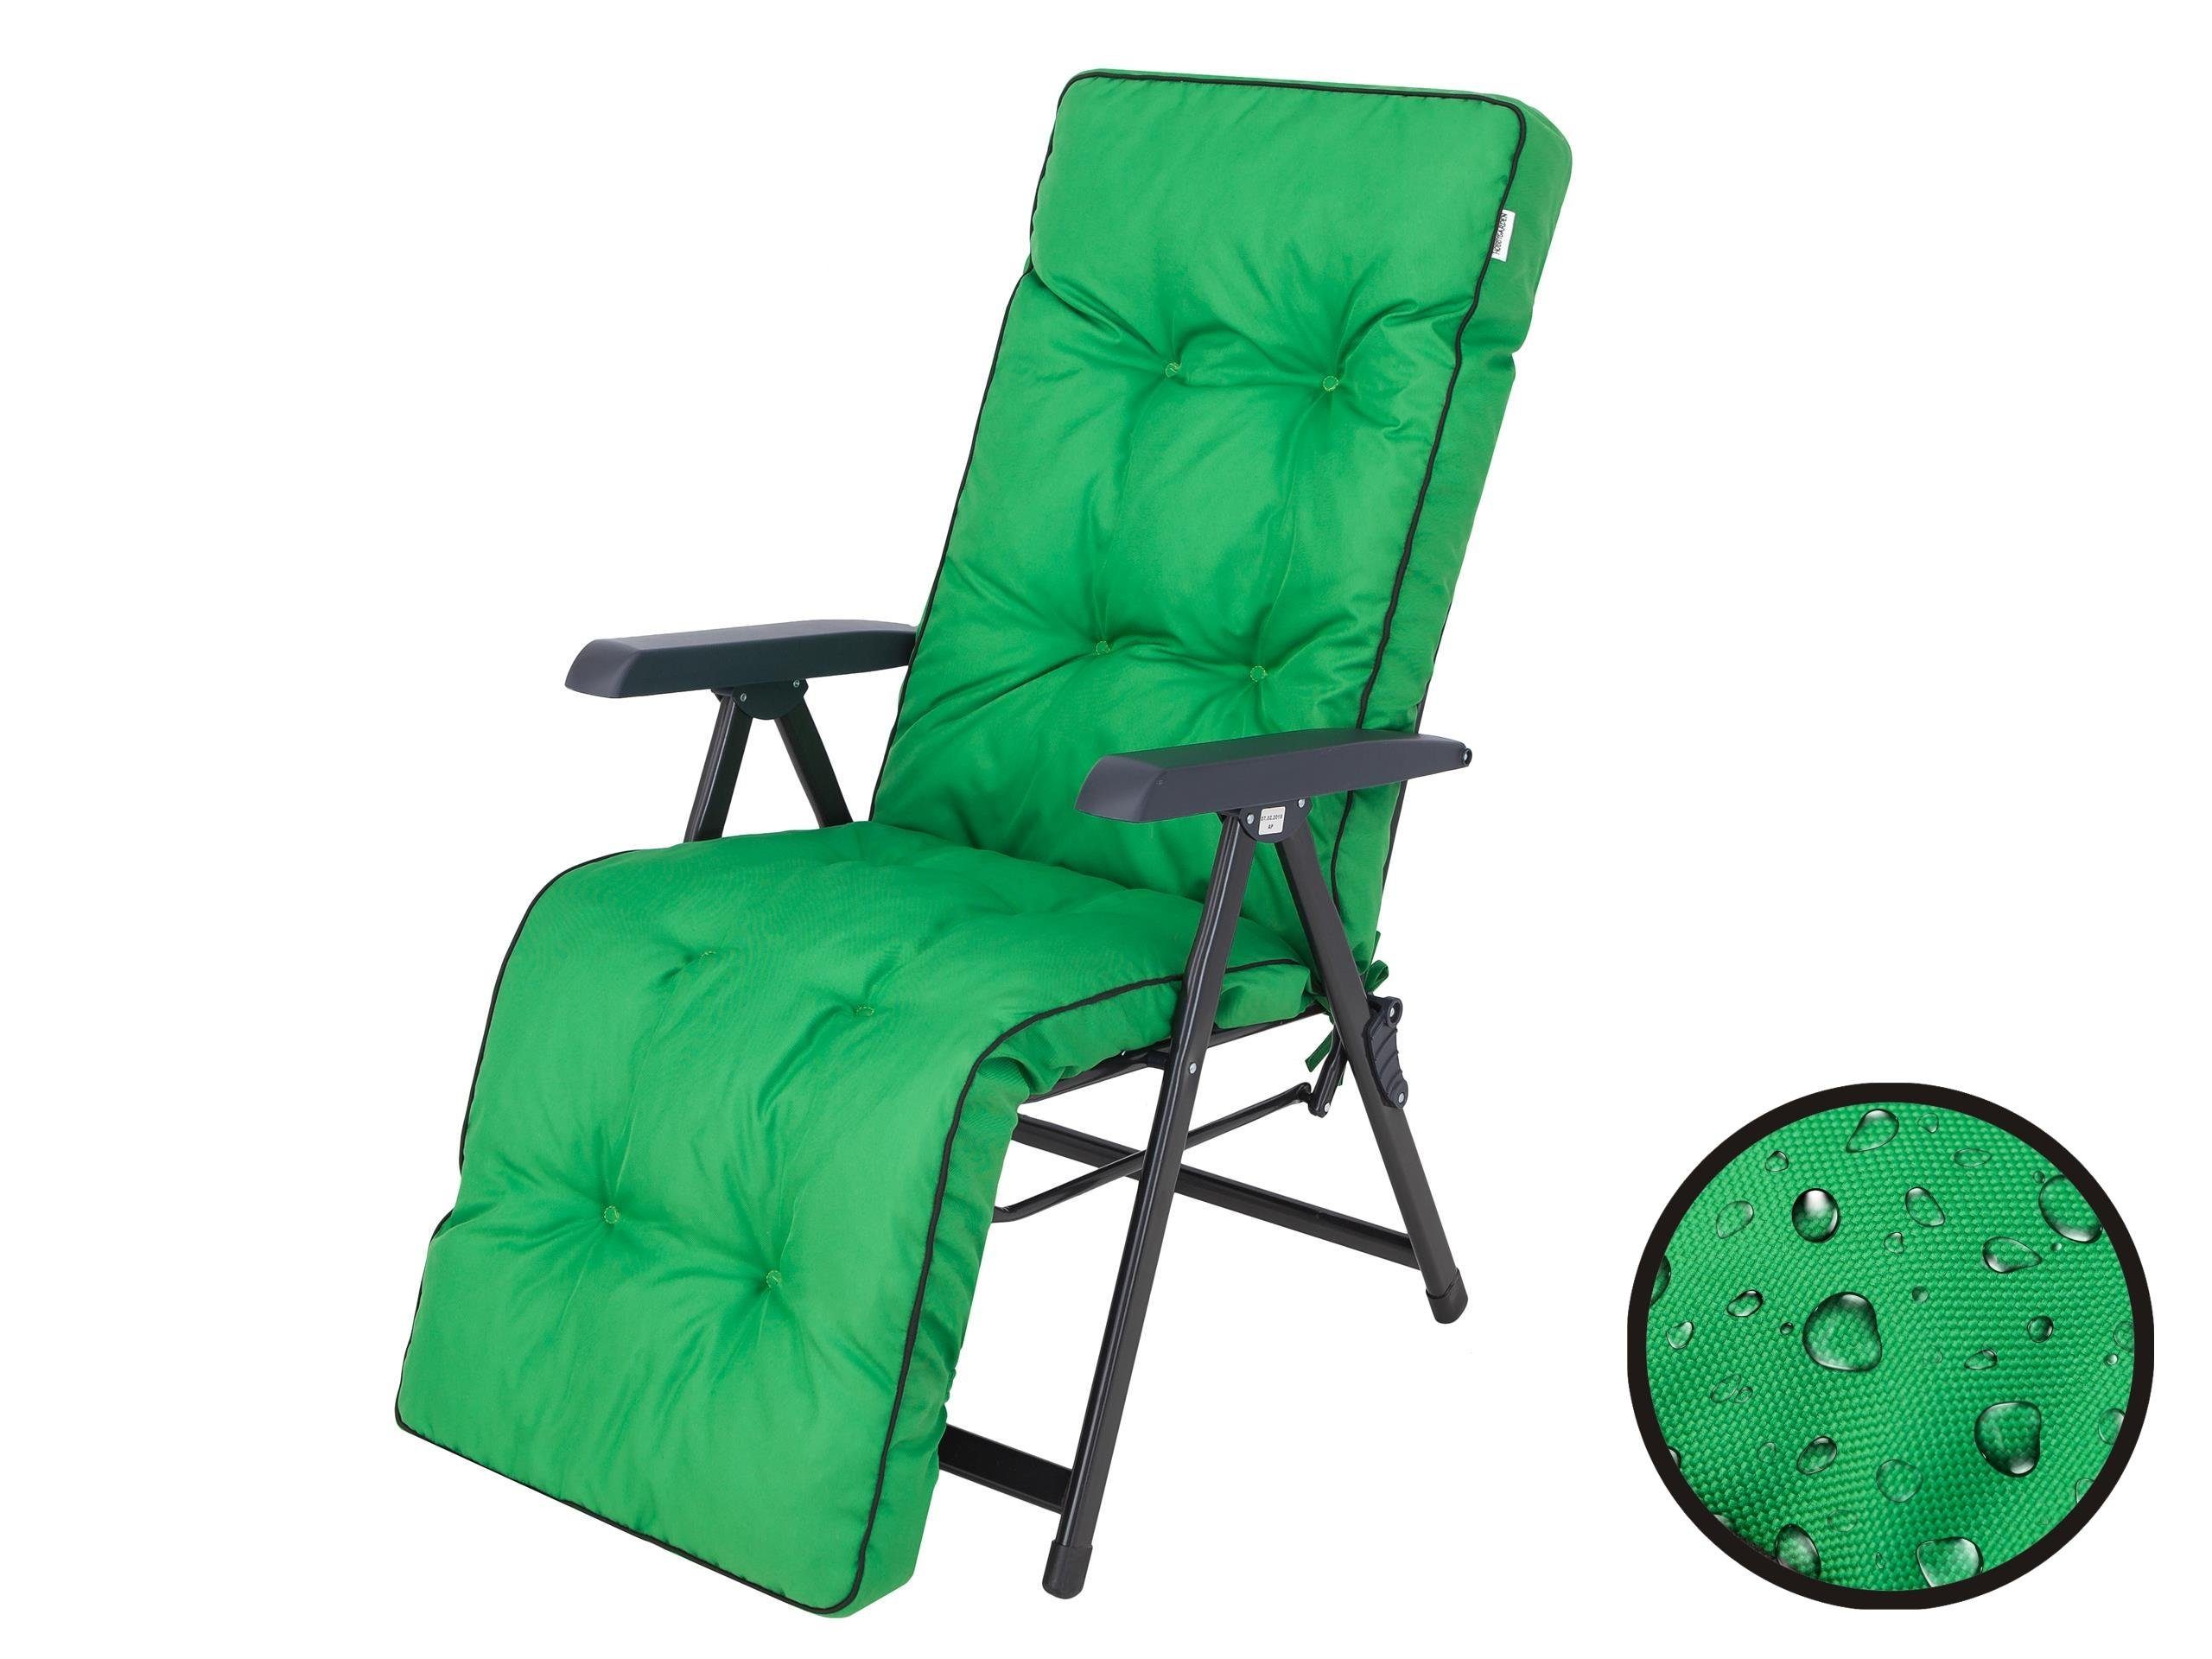 Bjird Liegenauflage Auflage für Liegestuhl 160x50x8, extra dicke  Polsterauflage für klappbare Gartenliege/Sonnenliege